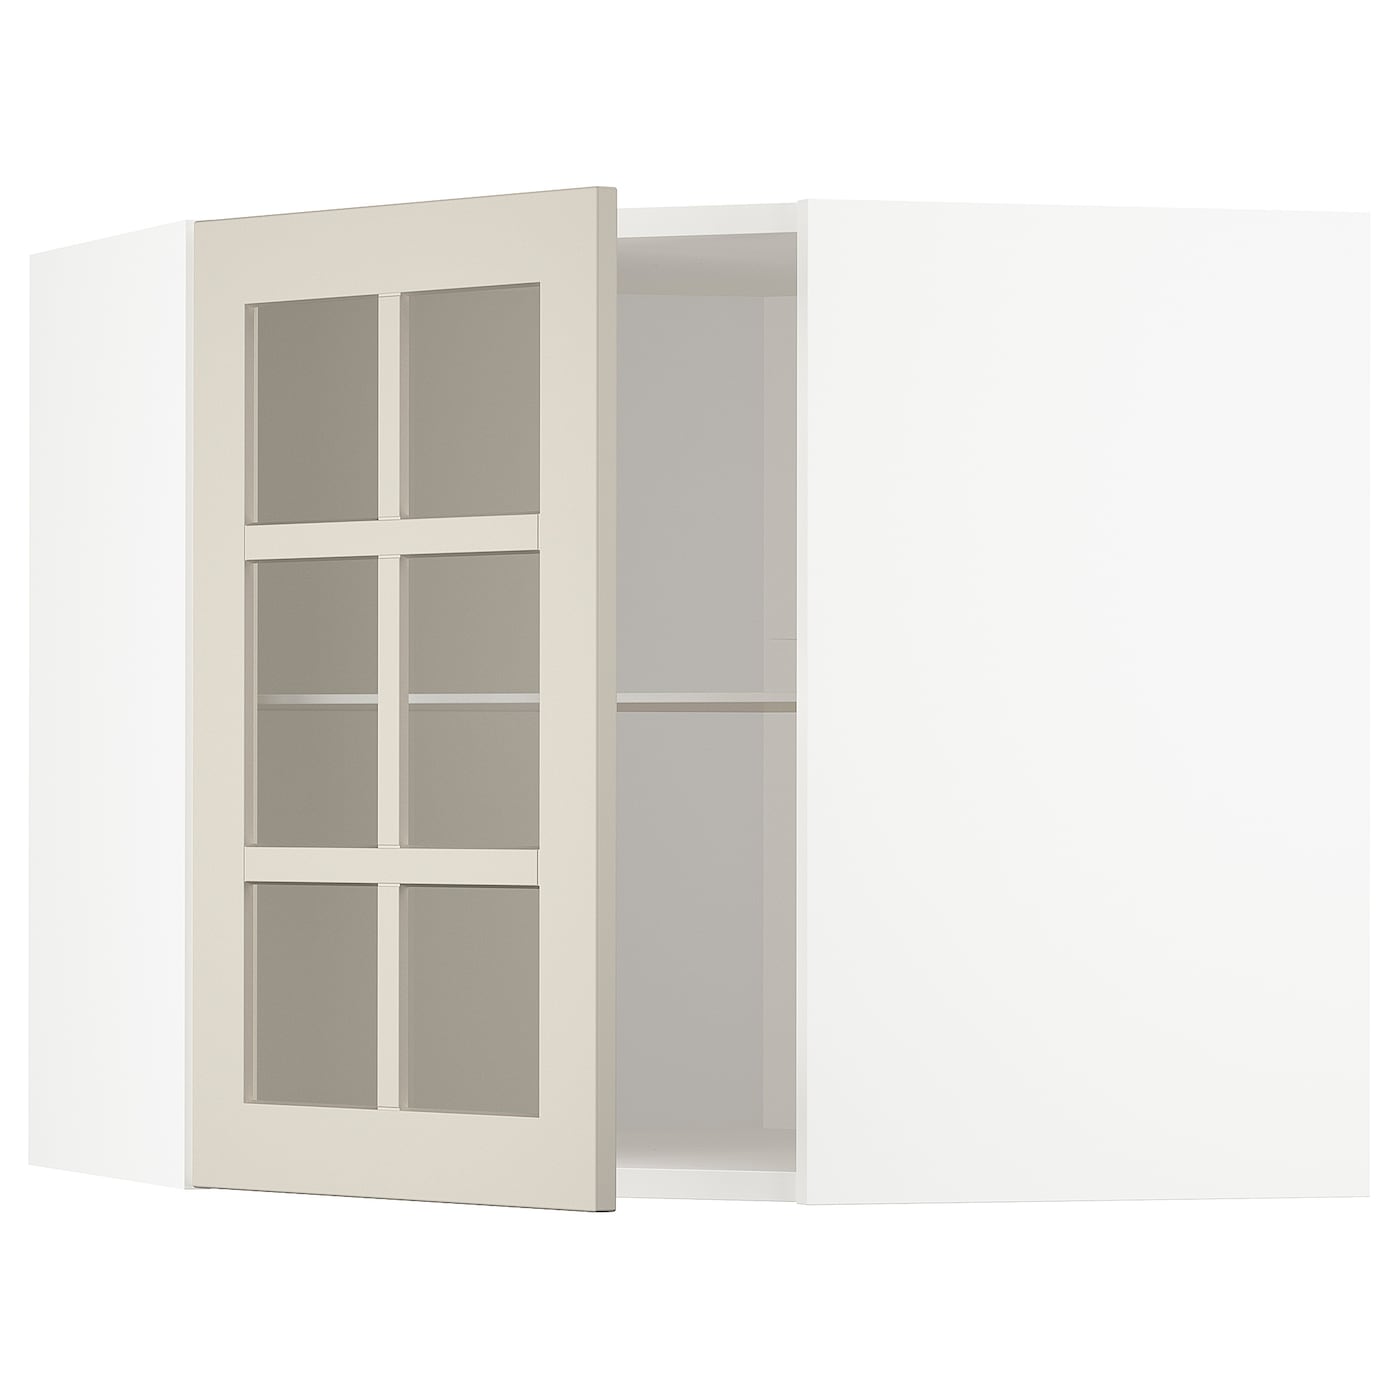 Шкаф  с дверцами и  стеклянной полочкой  - METOD IKEA/ МЕТОД ИКЕА, 68х60 см, белый/светло-бежевый